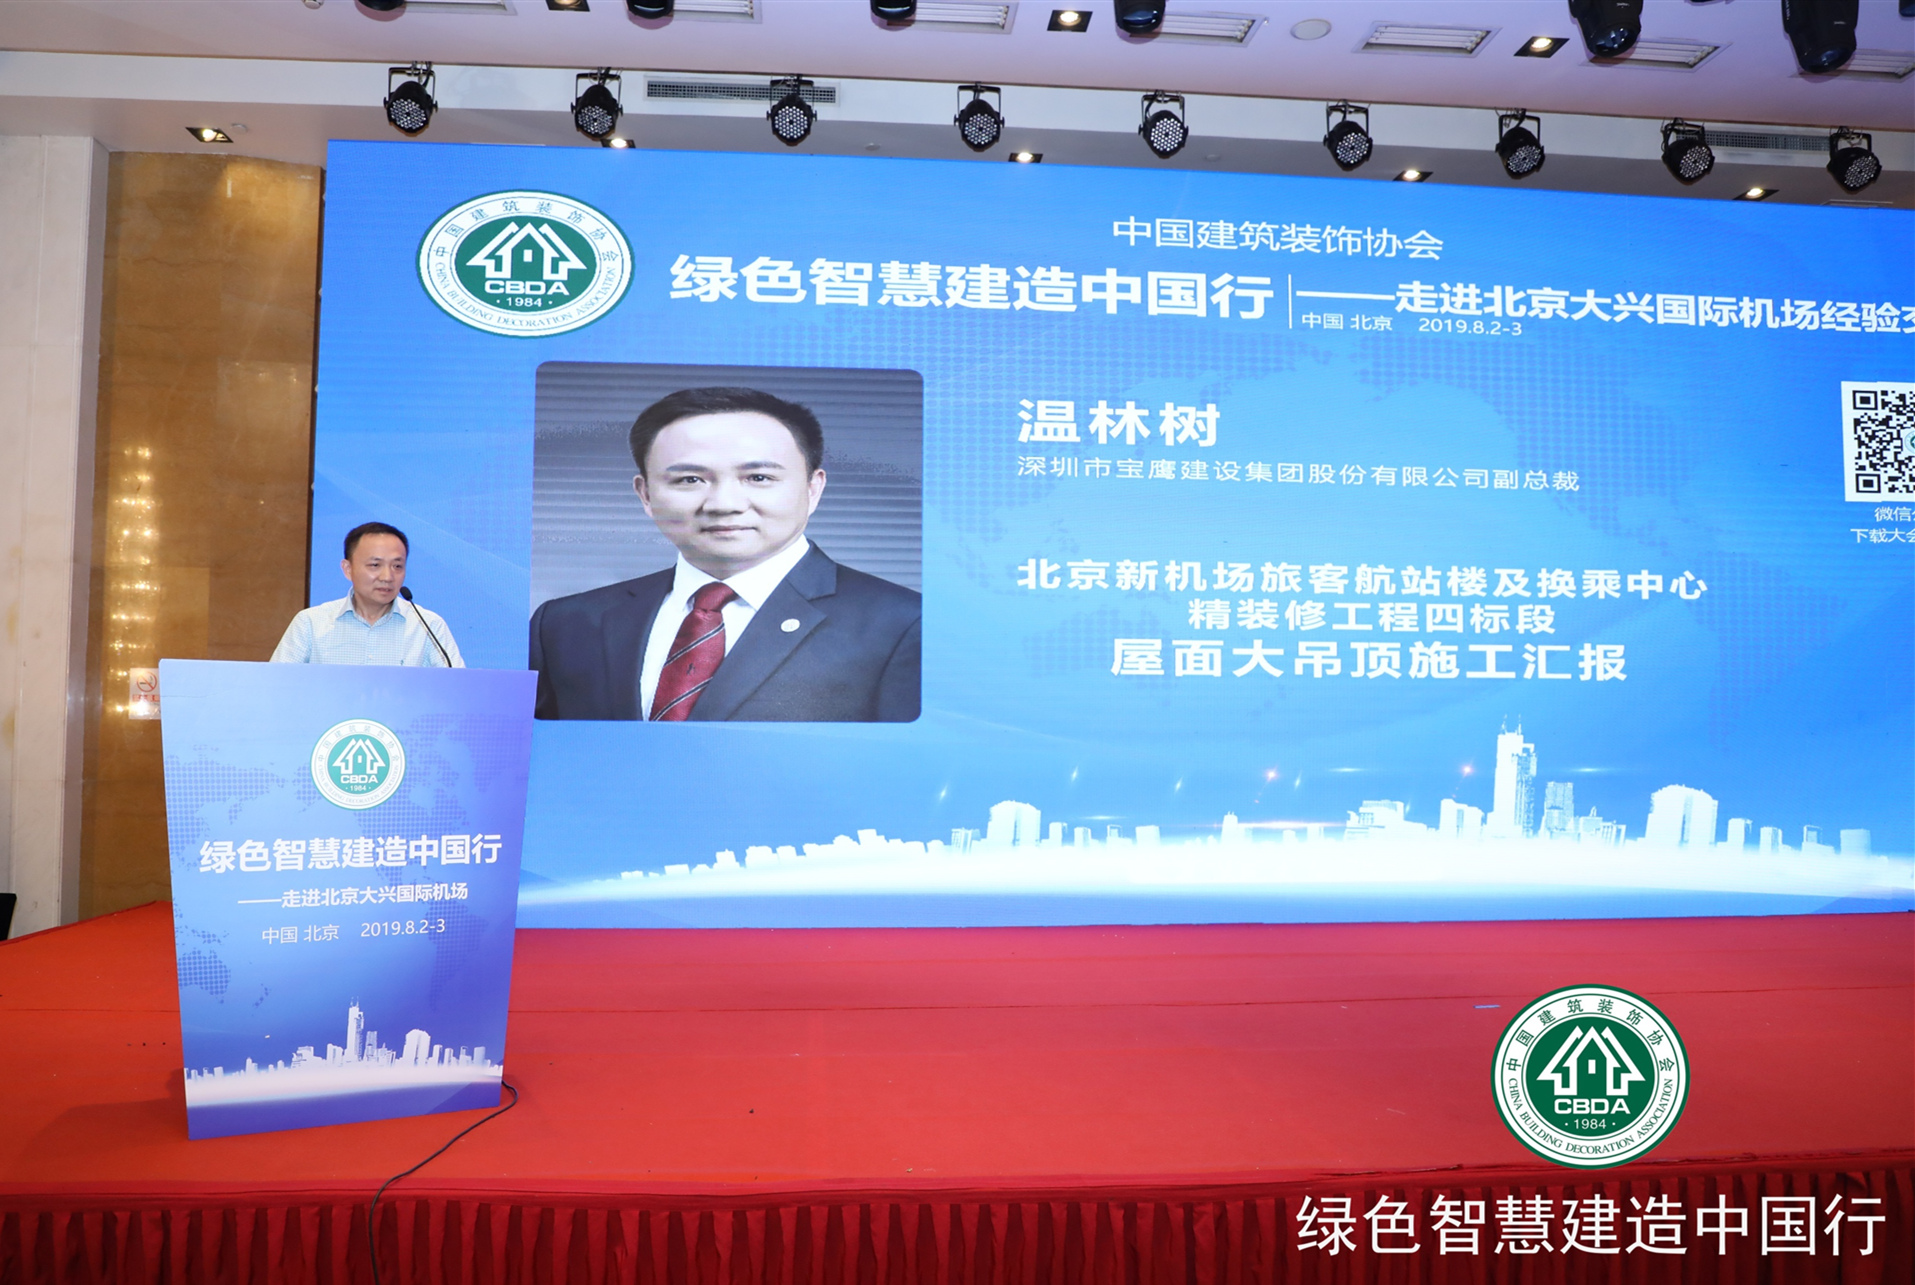 宝鹰集团副总裁温林树应邀分享北京大兴国际机场项目建设经验